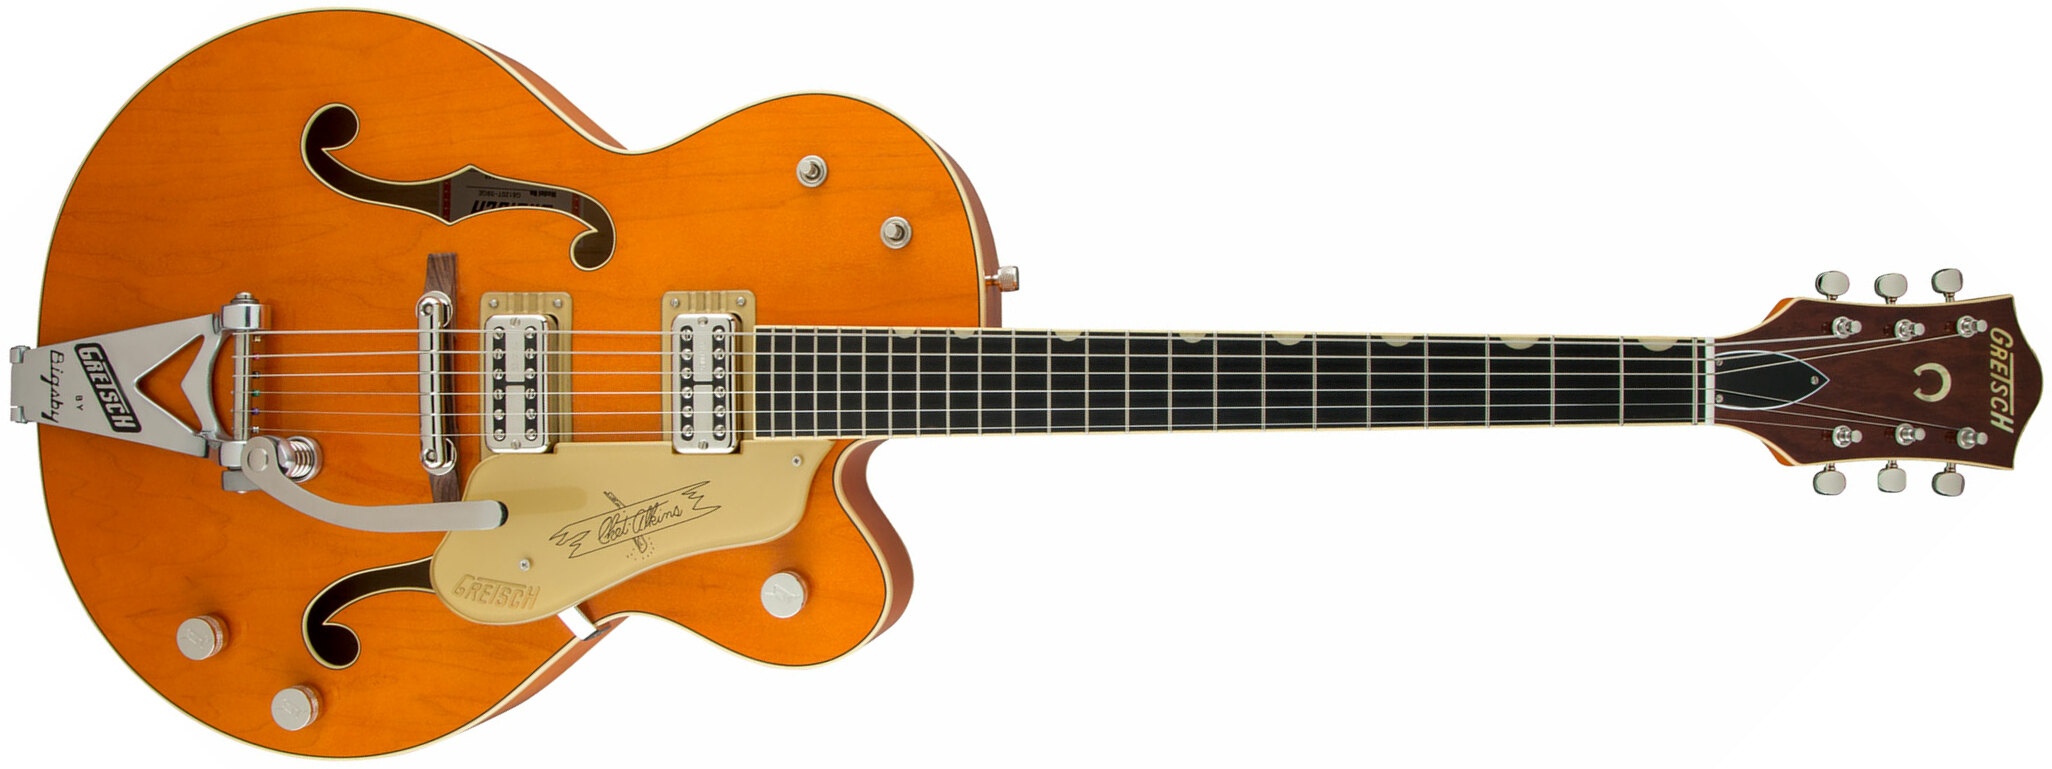 Gretsch Chet Atkins G6120t-59 Vintage Select 1959 Bigsby Pro Jap 2h Tv Jones Trem Eb - Vintage Orange Stain - Guitare Électrique 3/4 Caisse & Jazz - M